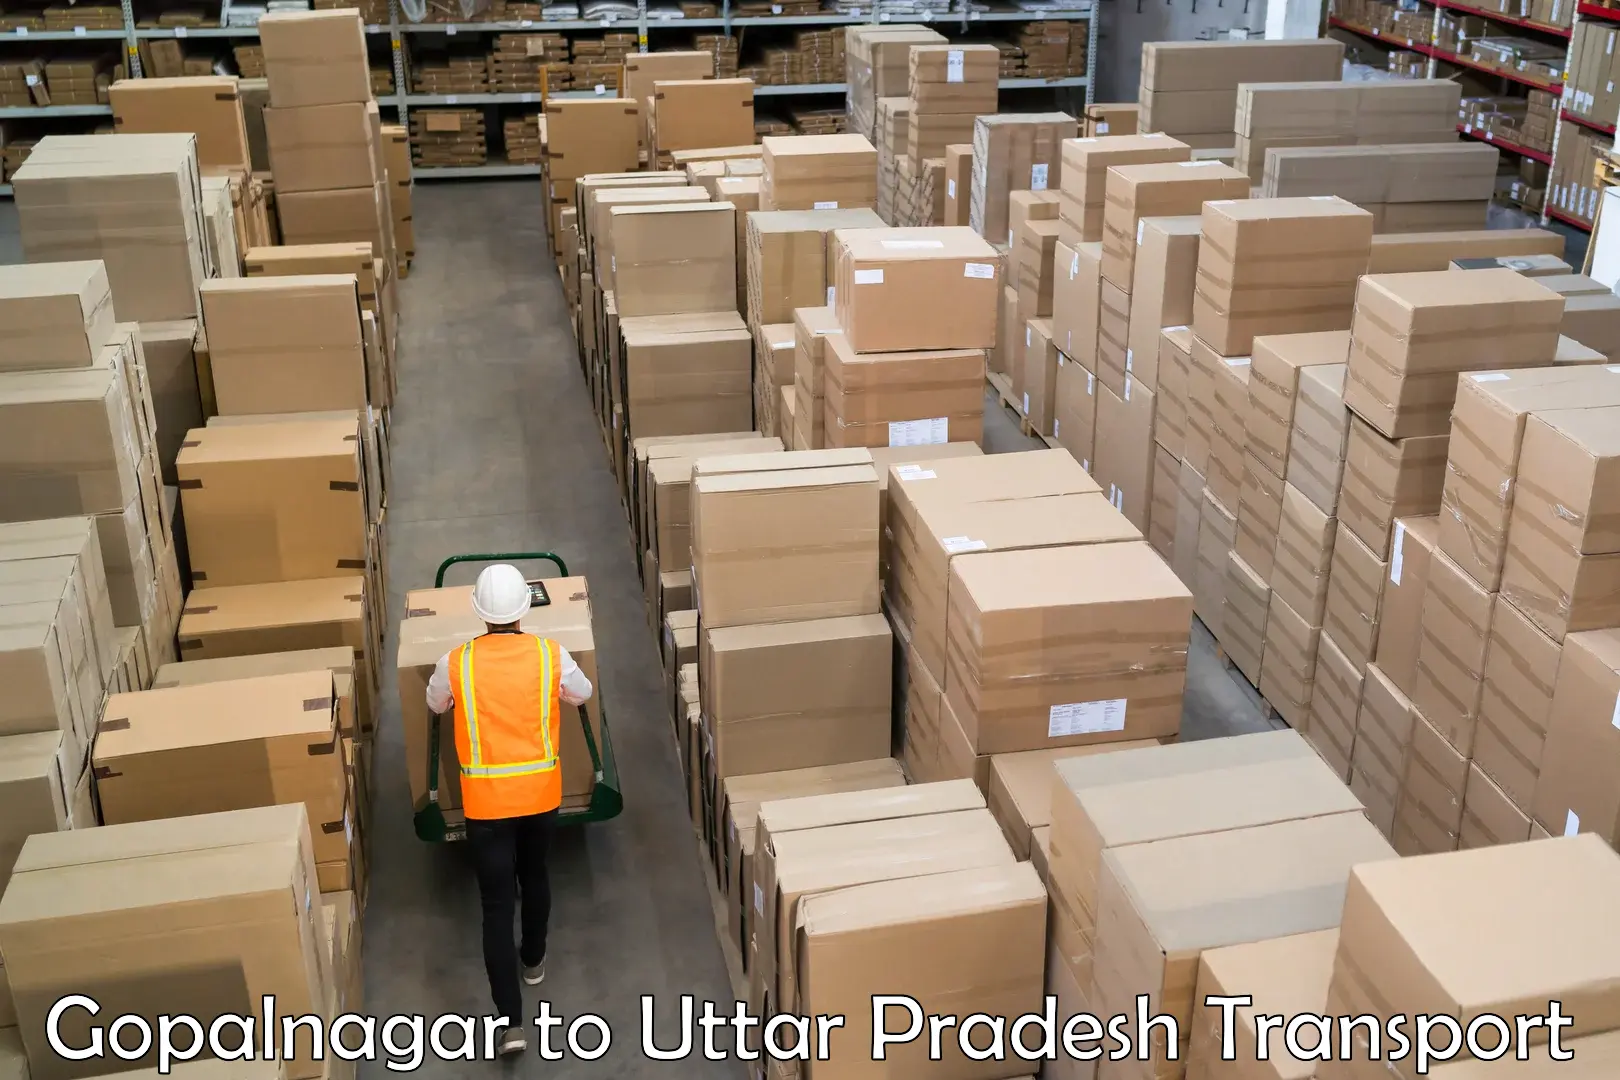 International cargo transportation services Gopalnagar to Itava